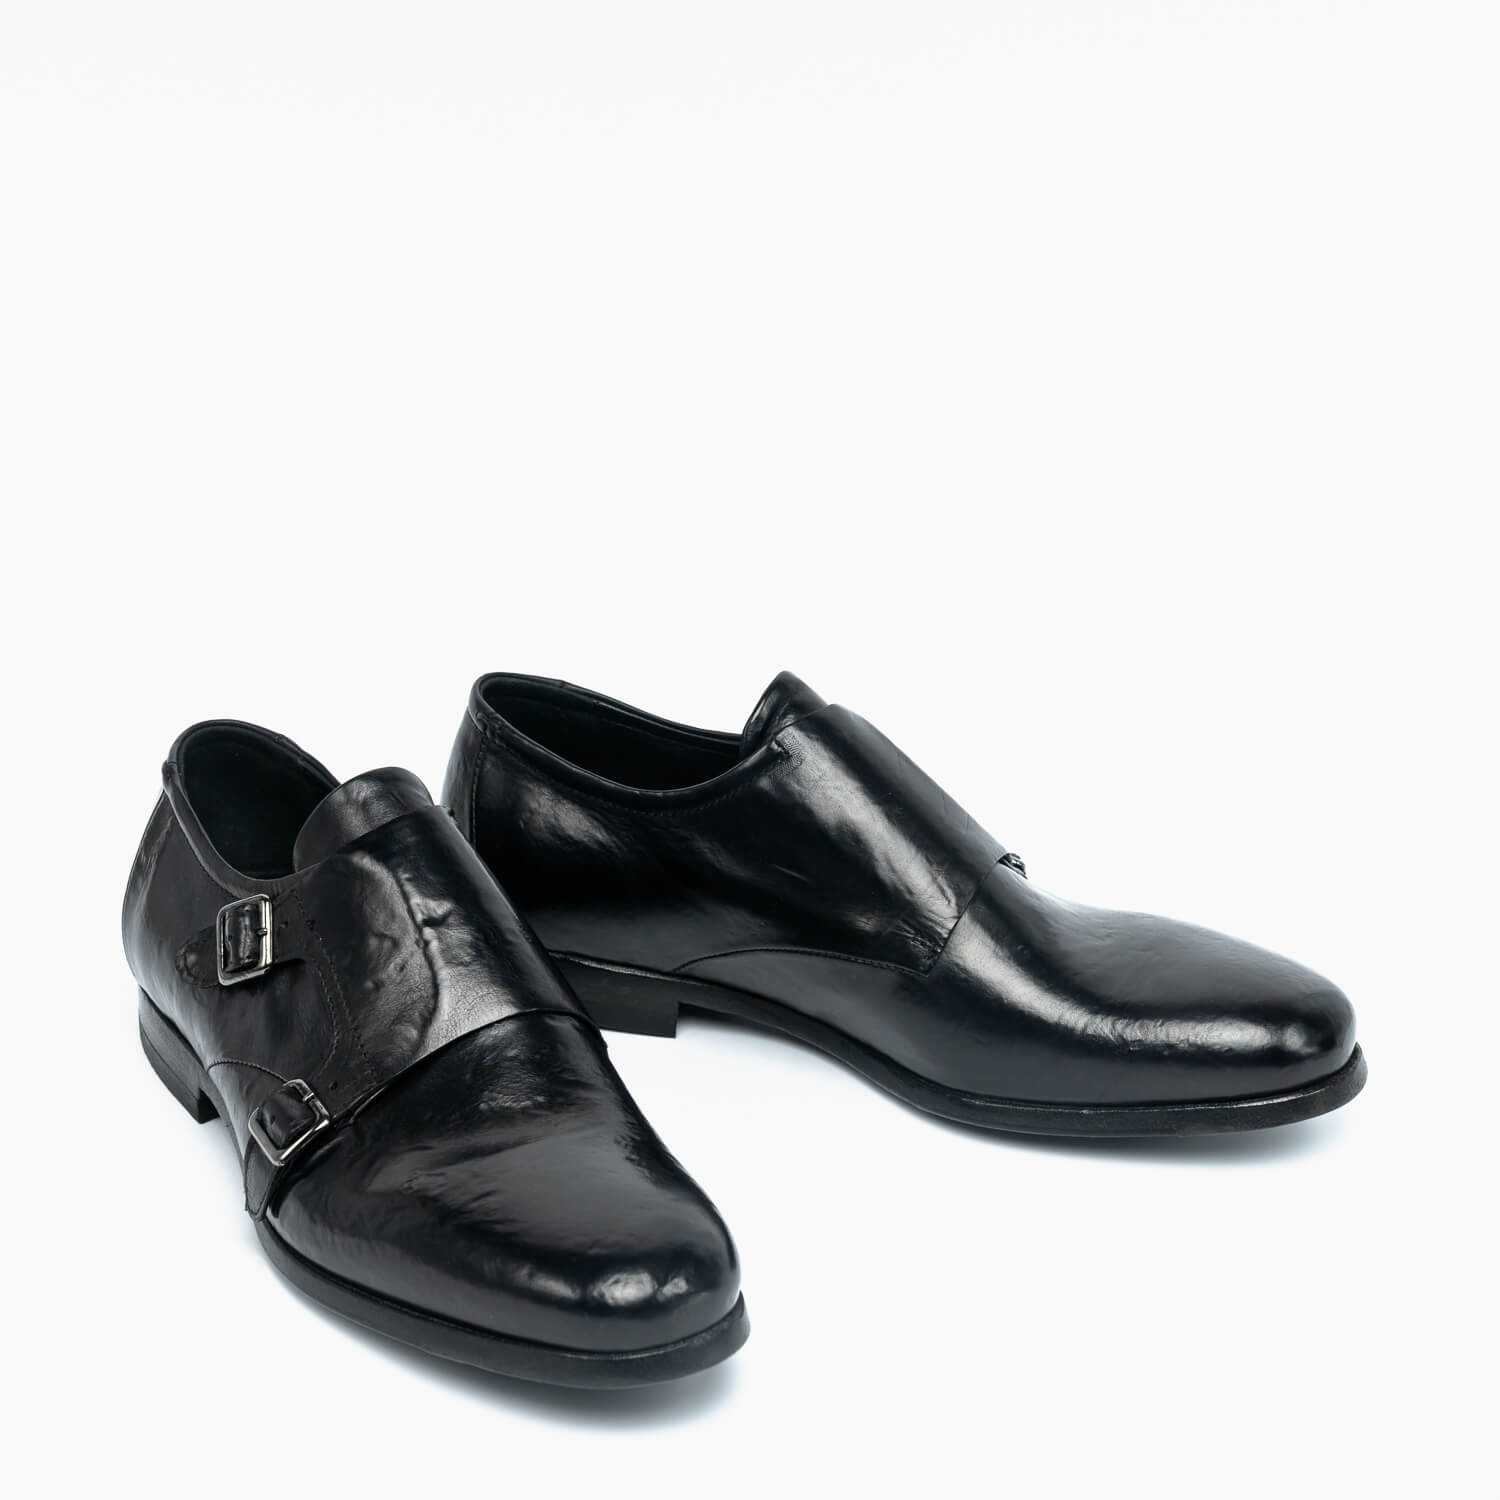 Corrado | Model 2801 double-buckle shoes black